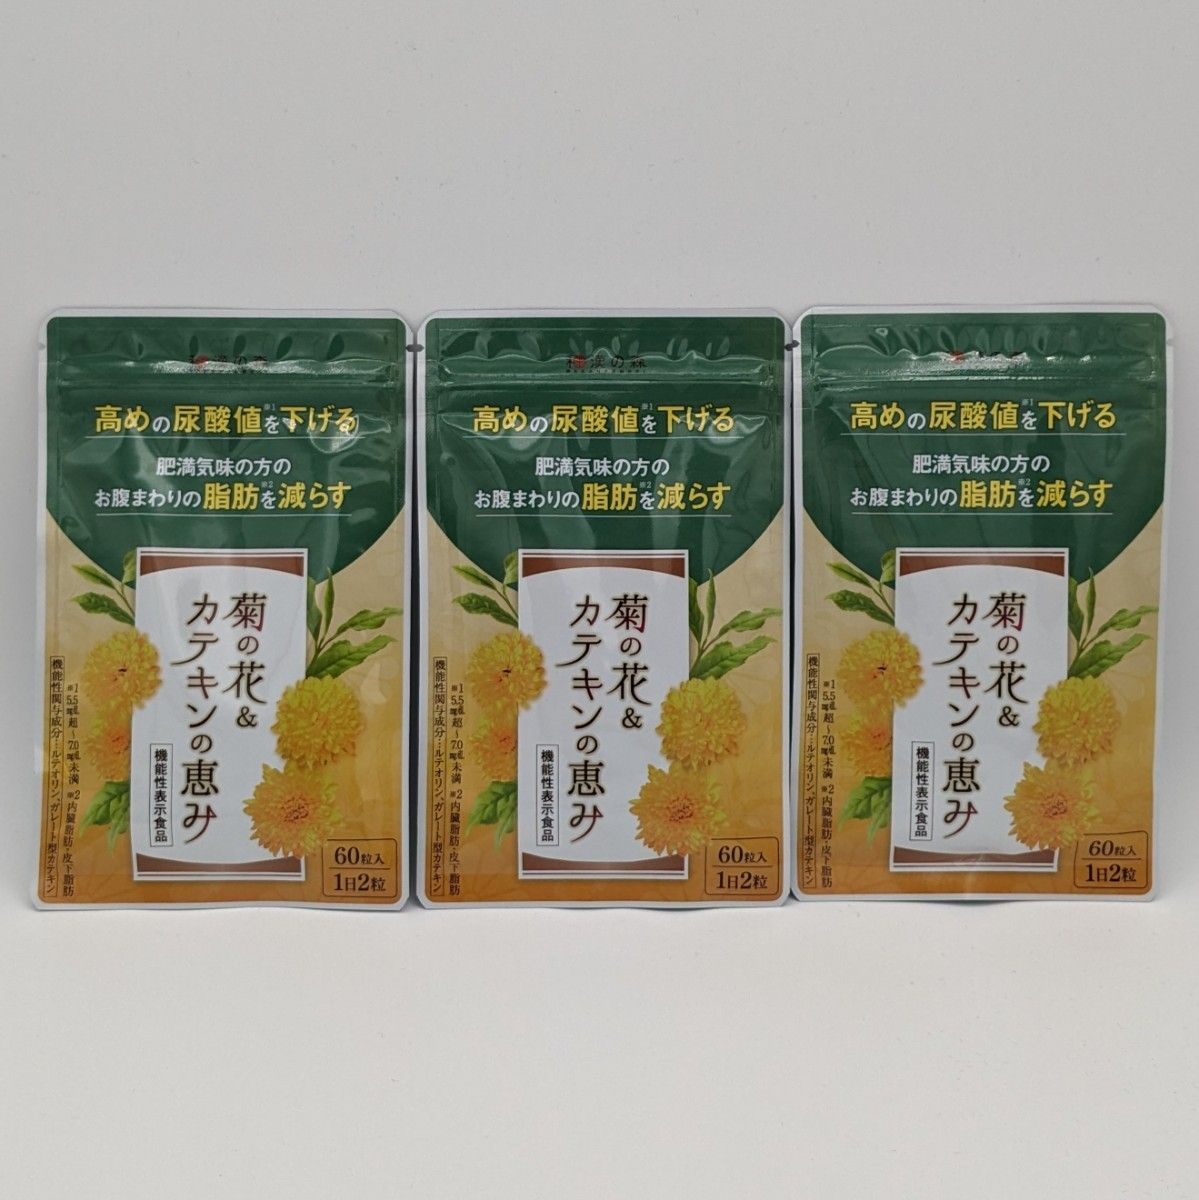 【新品】和漢の森 菊の花&カテキンの恵み 60粒 ×3袋